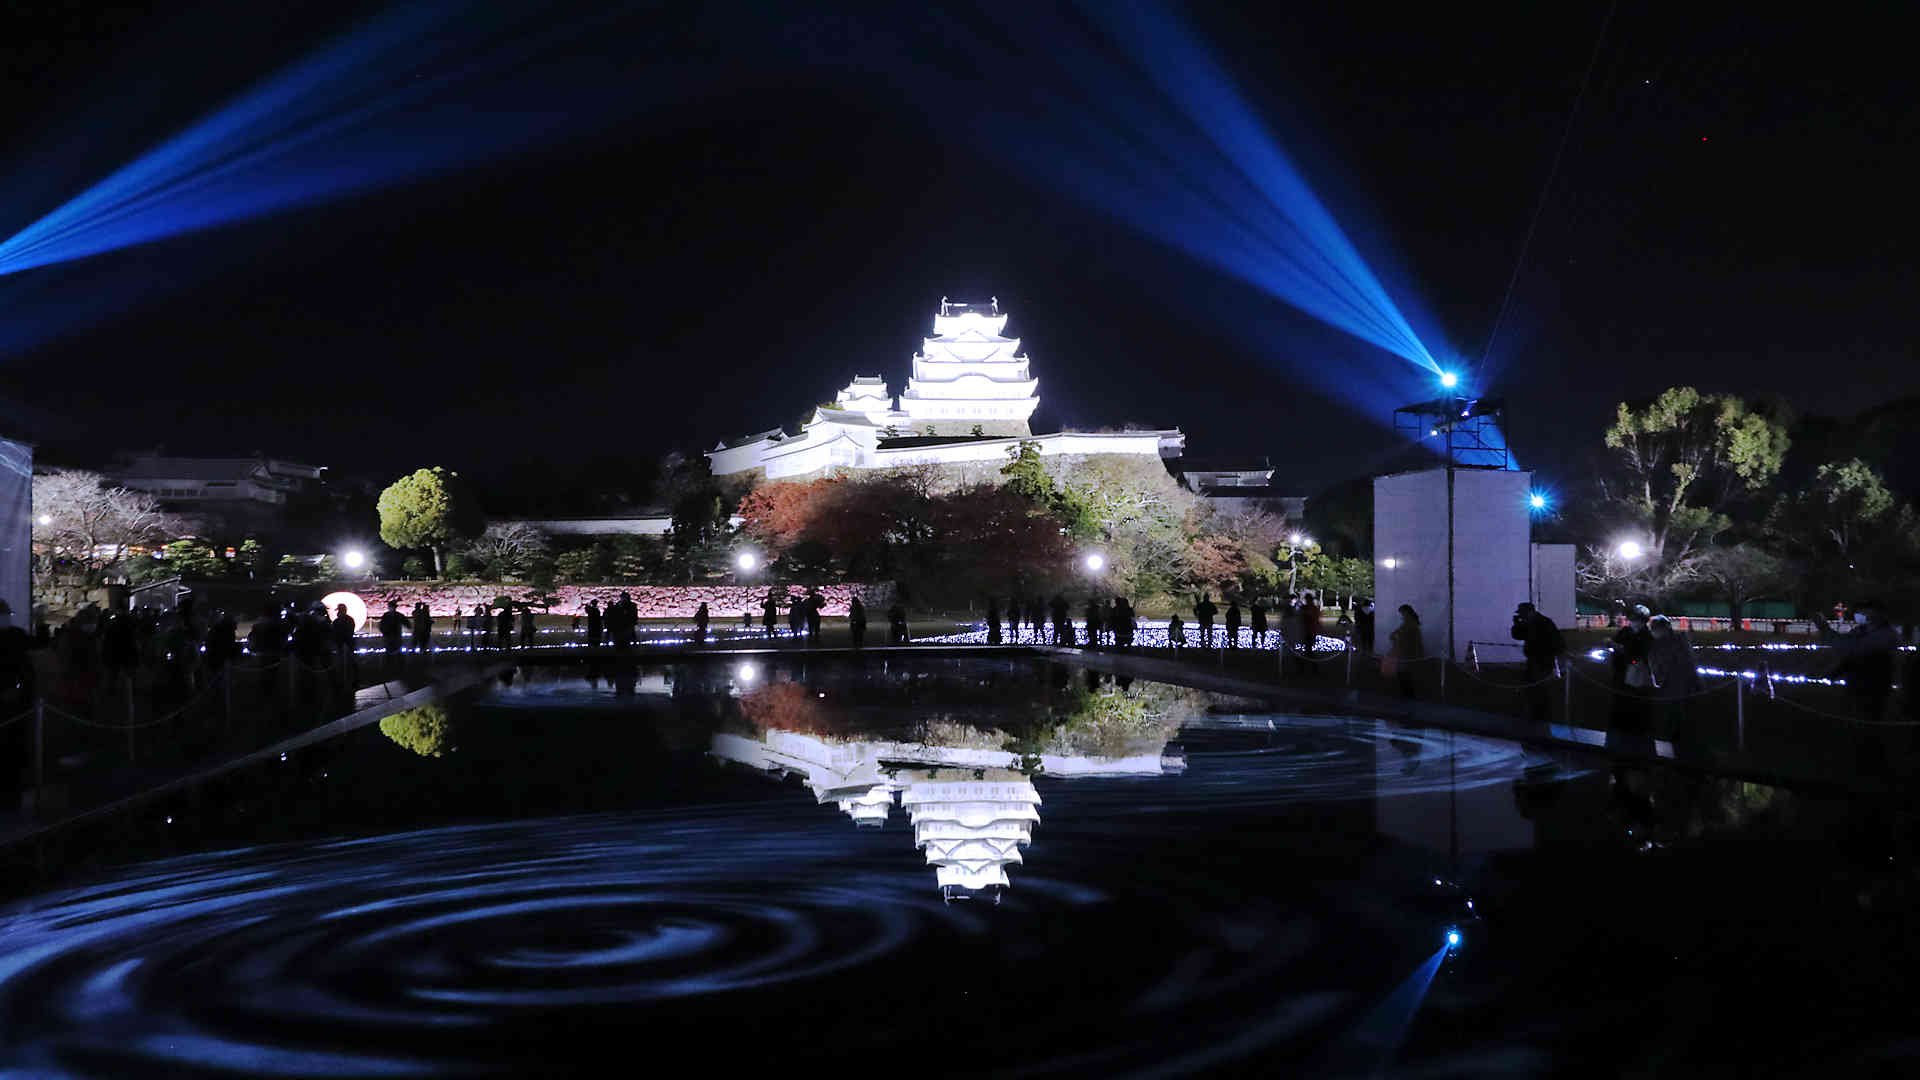 三の丸広場に設置された巨大な水鏡に映る逆さ姫路城